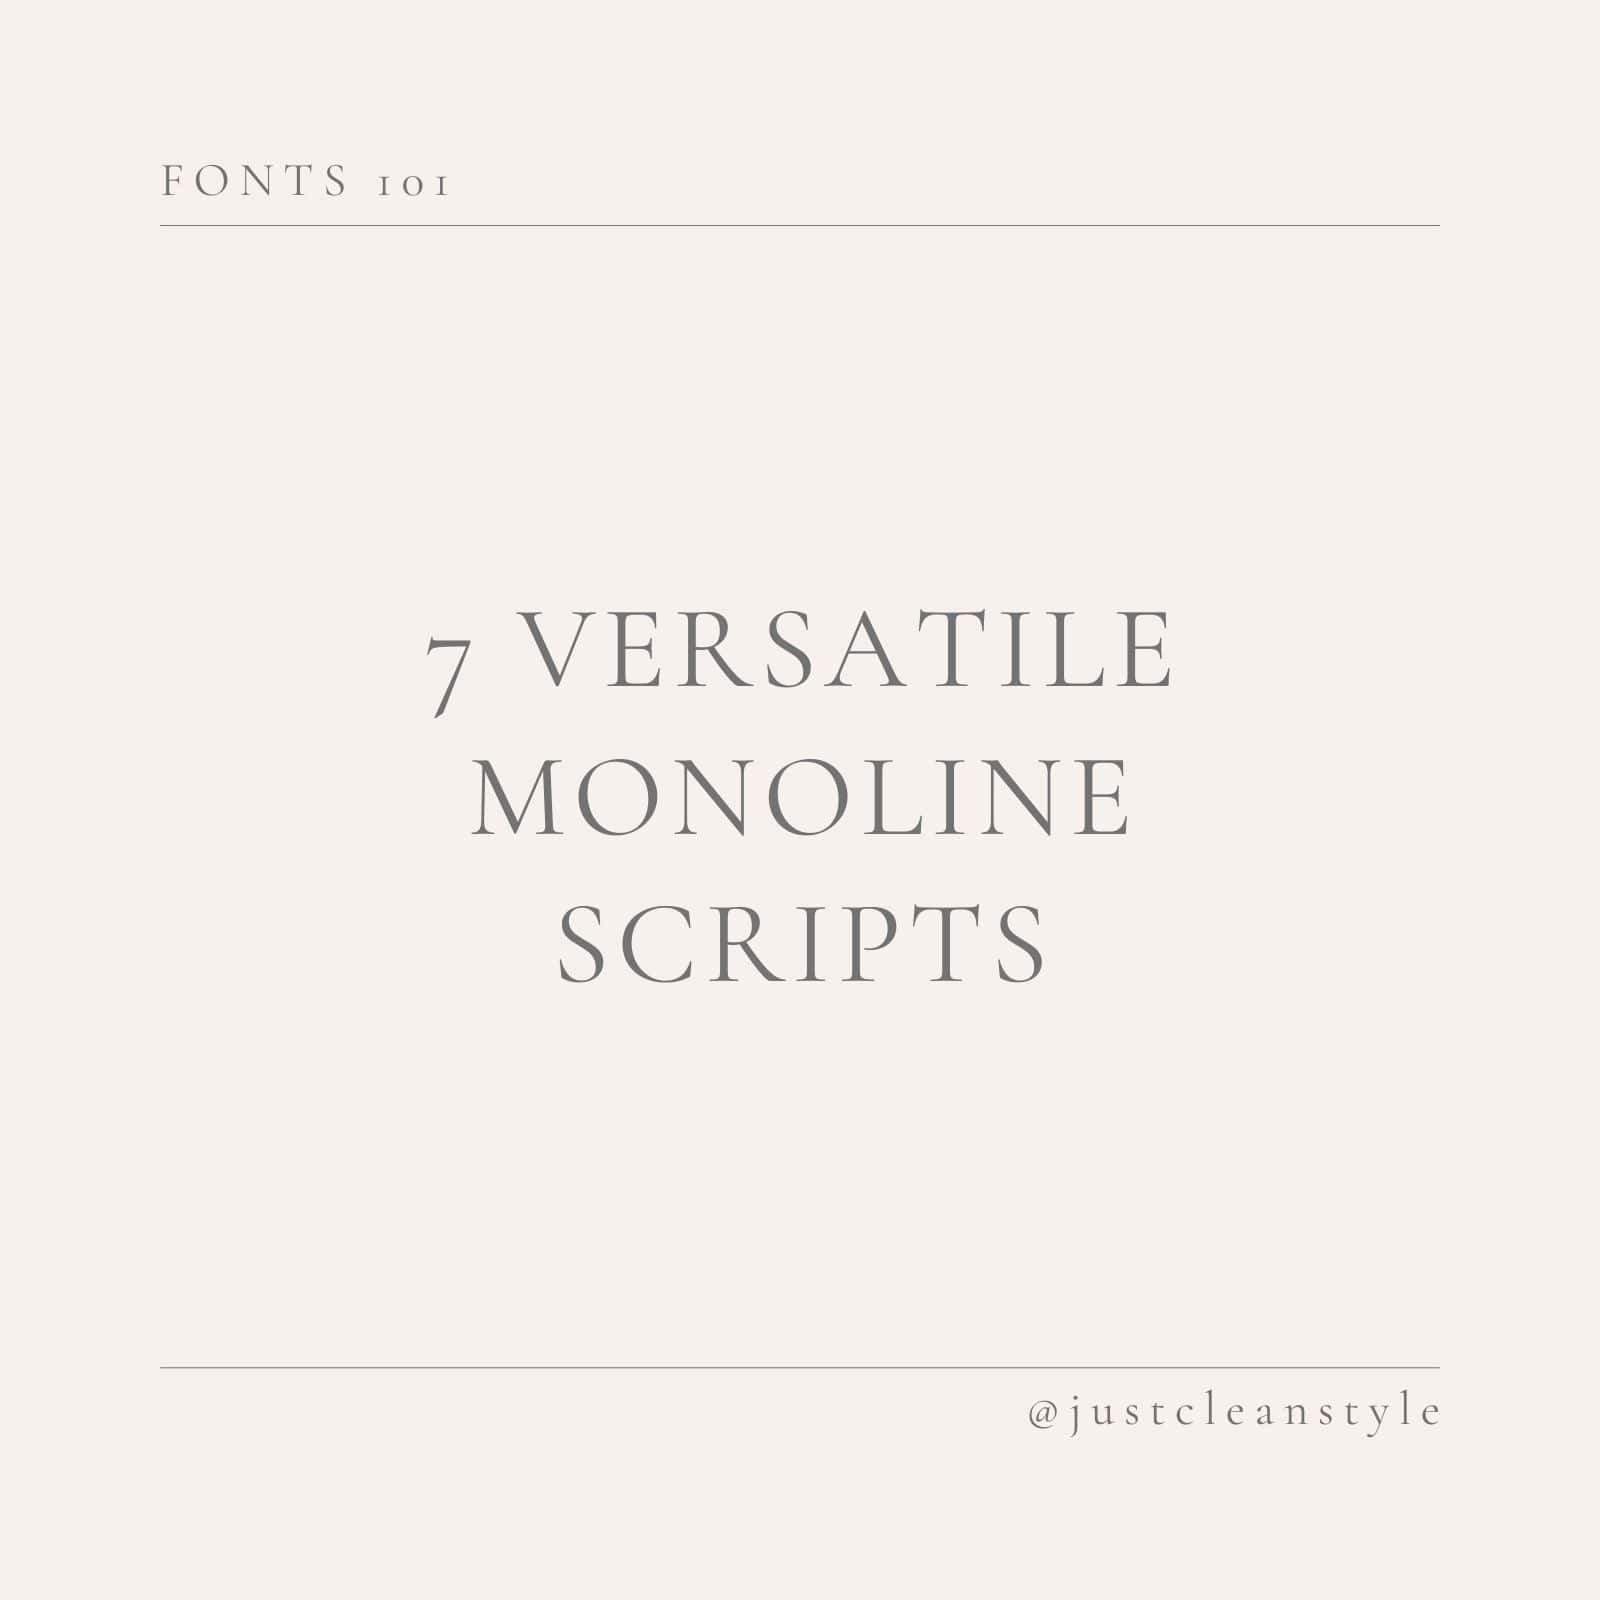 monoline script fonts best